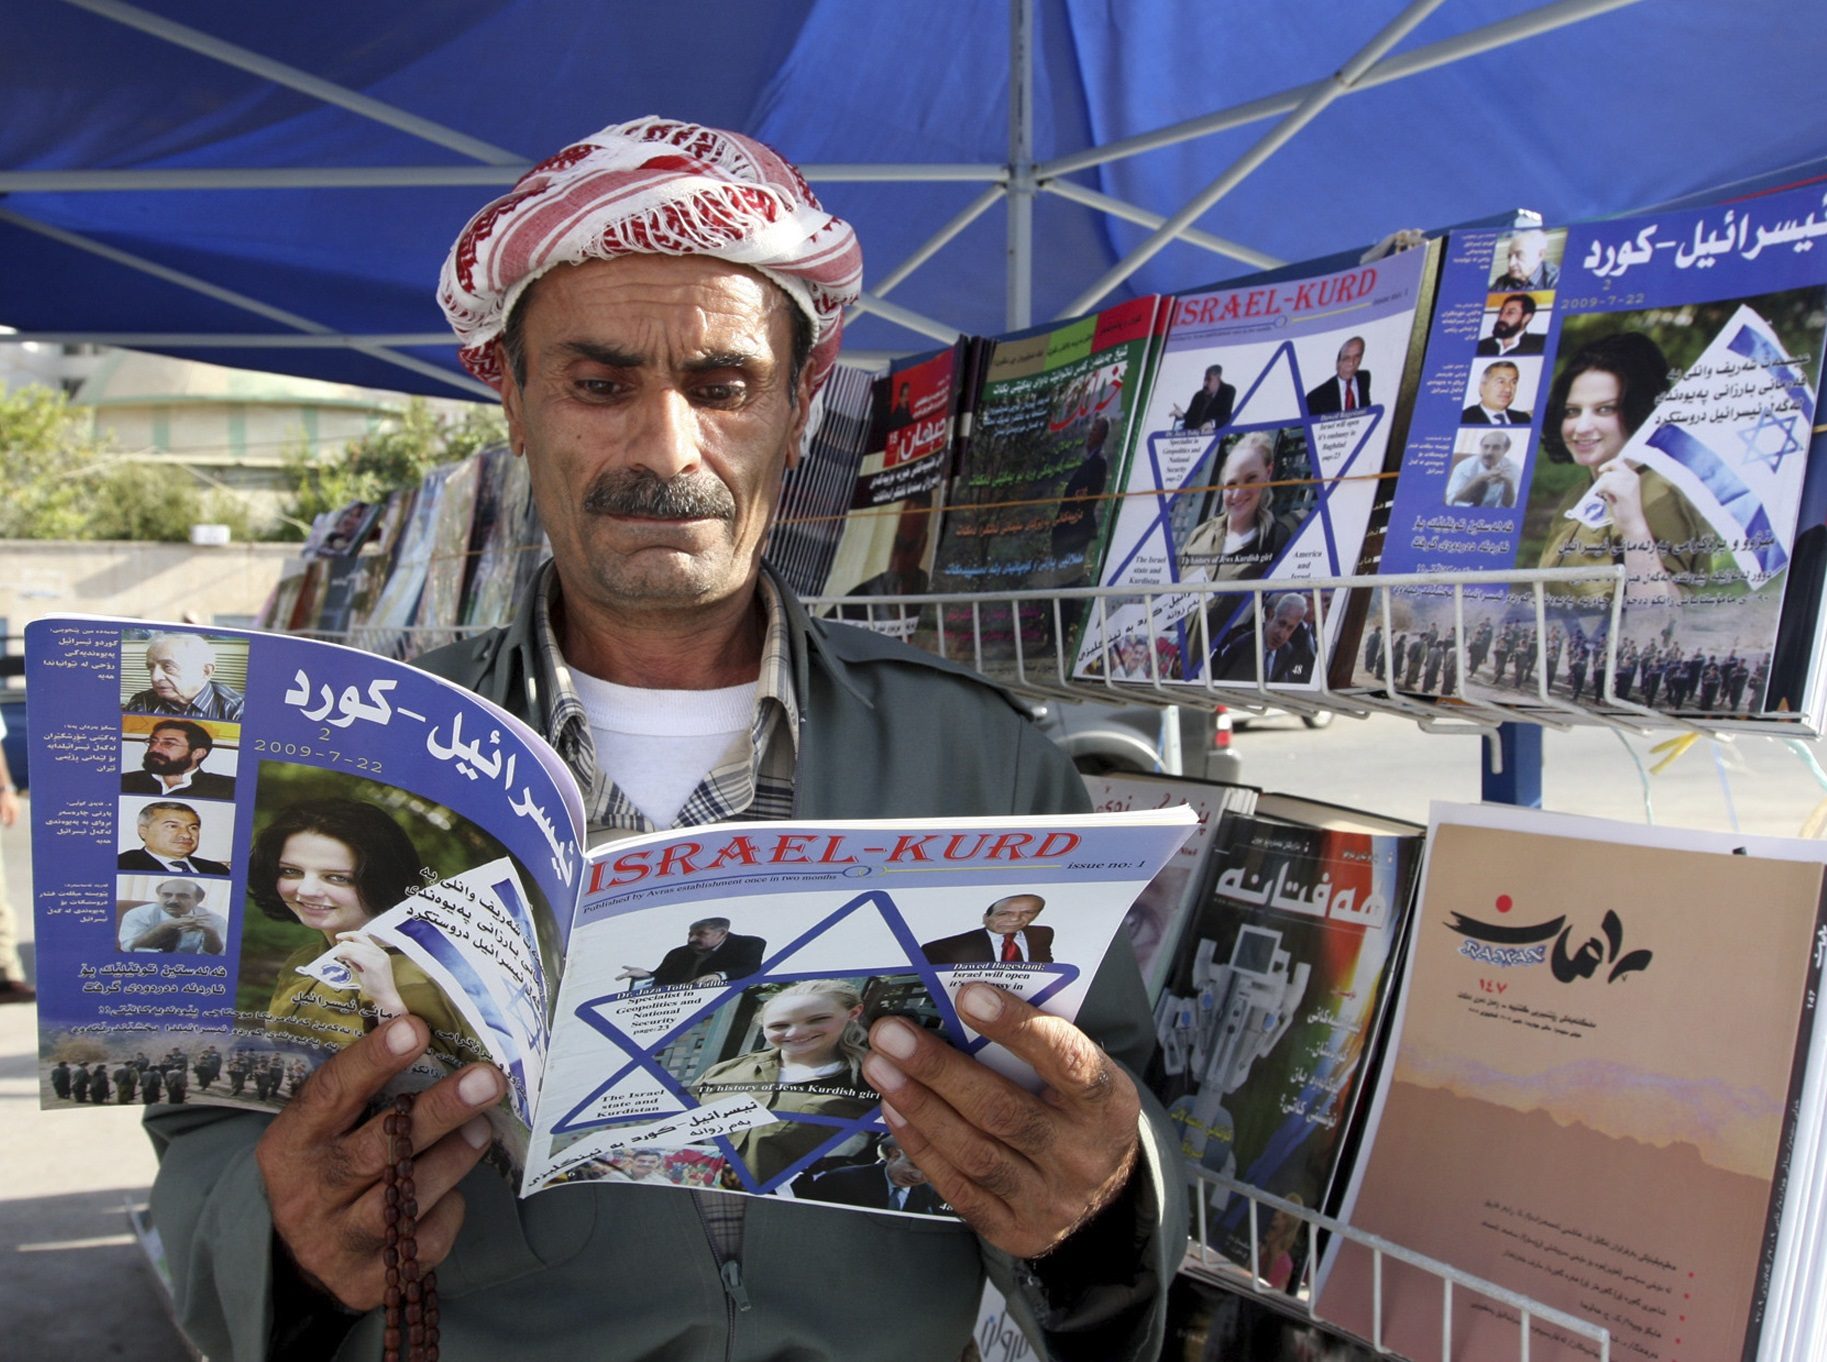 An Iraqi Kurd reads a copy of the magazine Israel-Kurd on a street in Irbil, Iraq